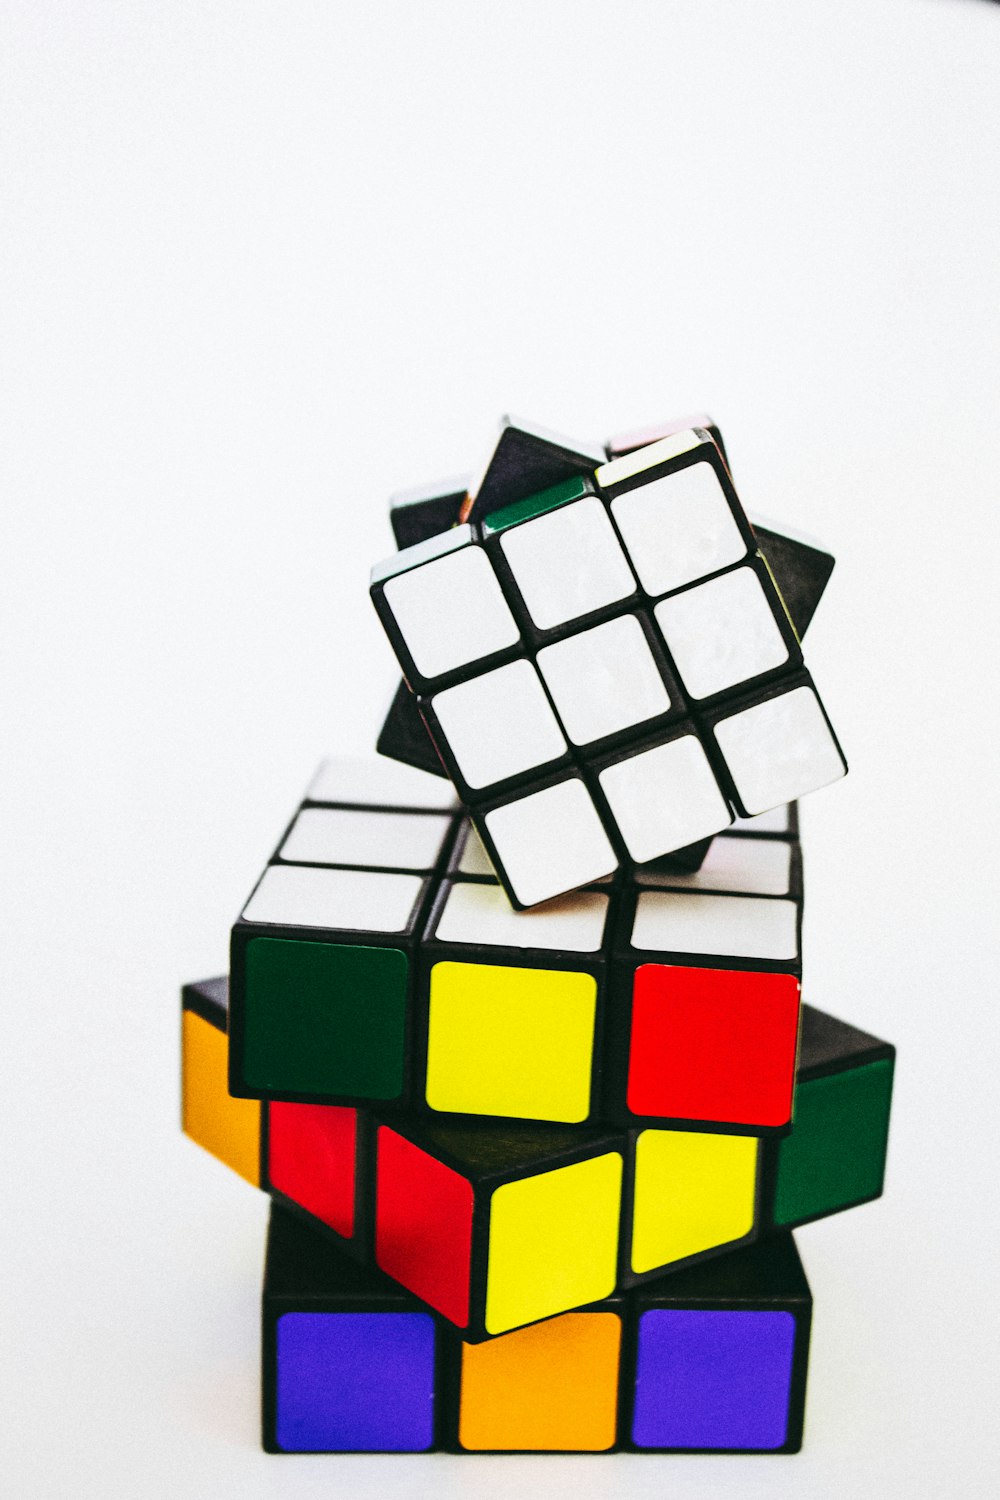 3 X 3 Rubiks Cube Photo Free Rubix Cube Image On Unsplash